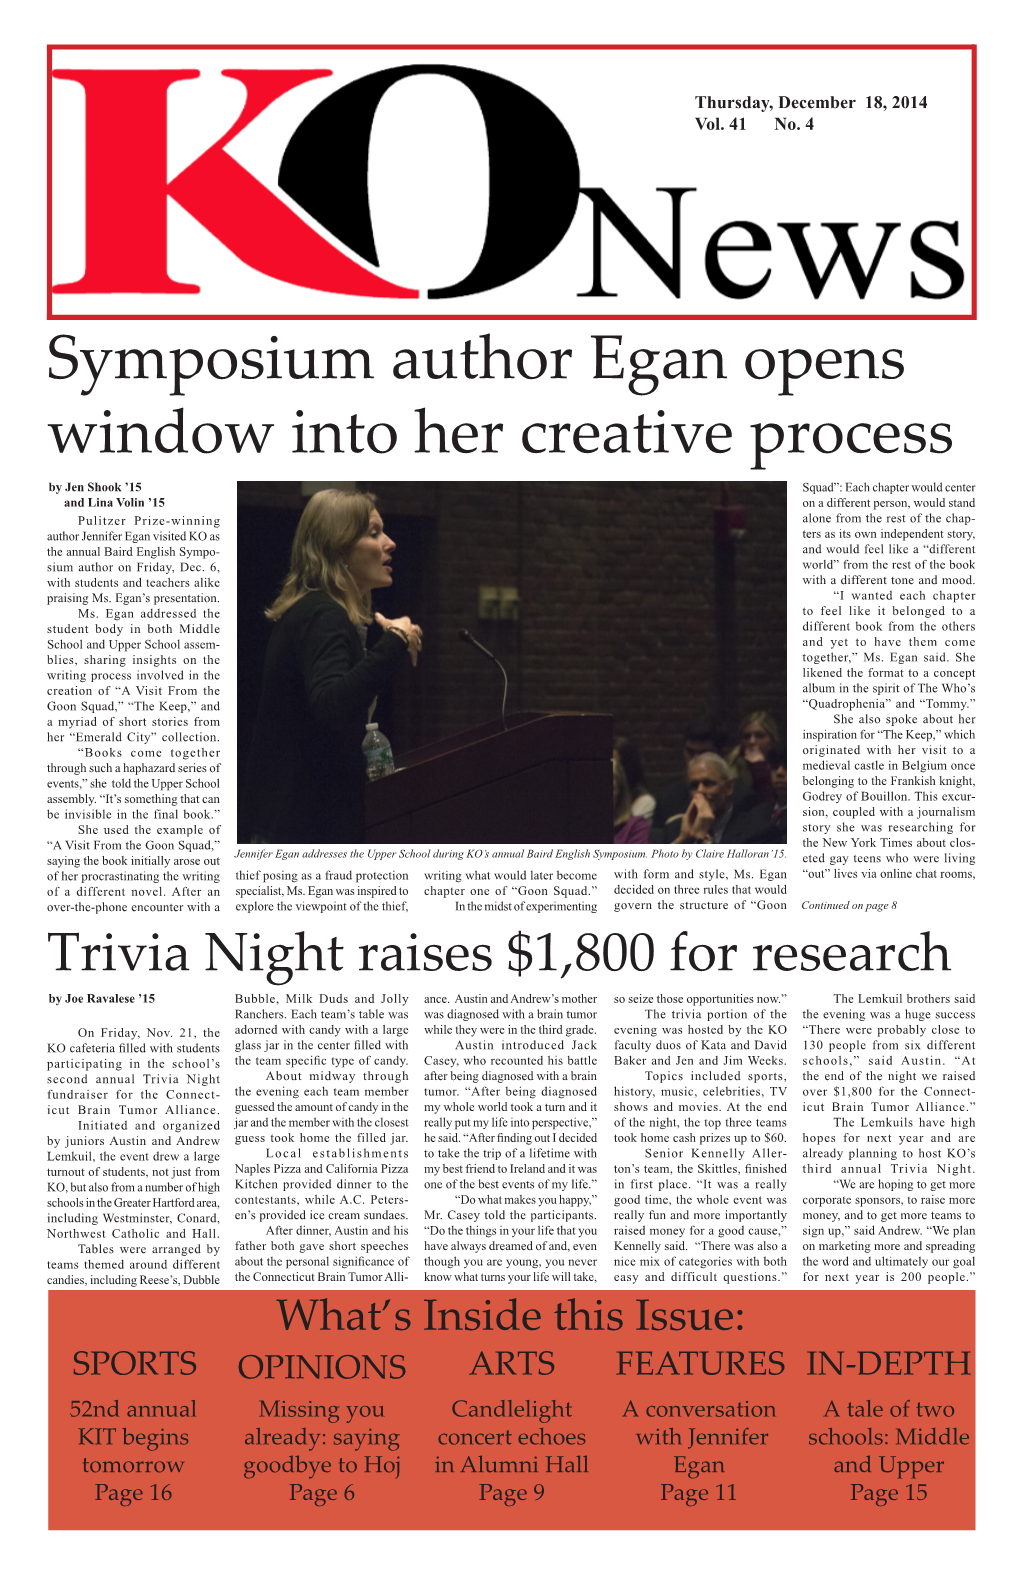 Symposium Author Egan Opens Window Into Her Creative